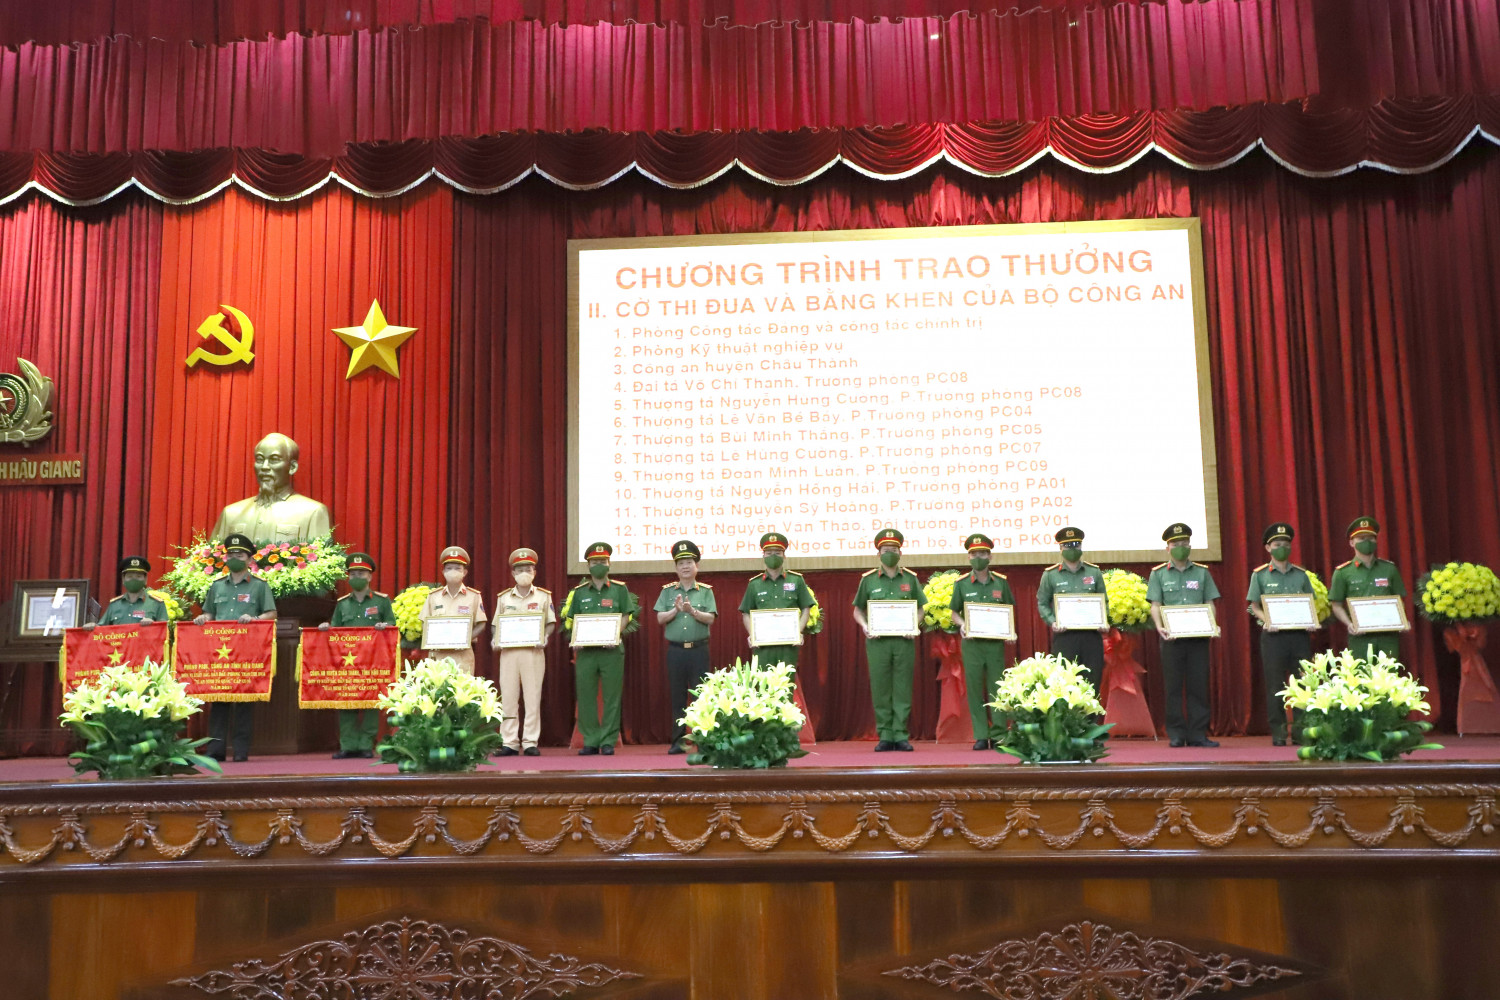 Đồng chí Thượng tướng Nguyễn Văn Sơn, Ủy viên Ban Thường vụ Đảng ủy Công an Trung ương, Thứ trưởng Bộ Công an trao Cờ thi đua và Bằng khen của Bộ Công an